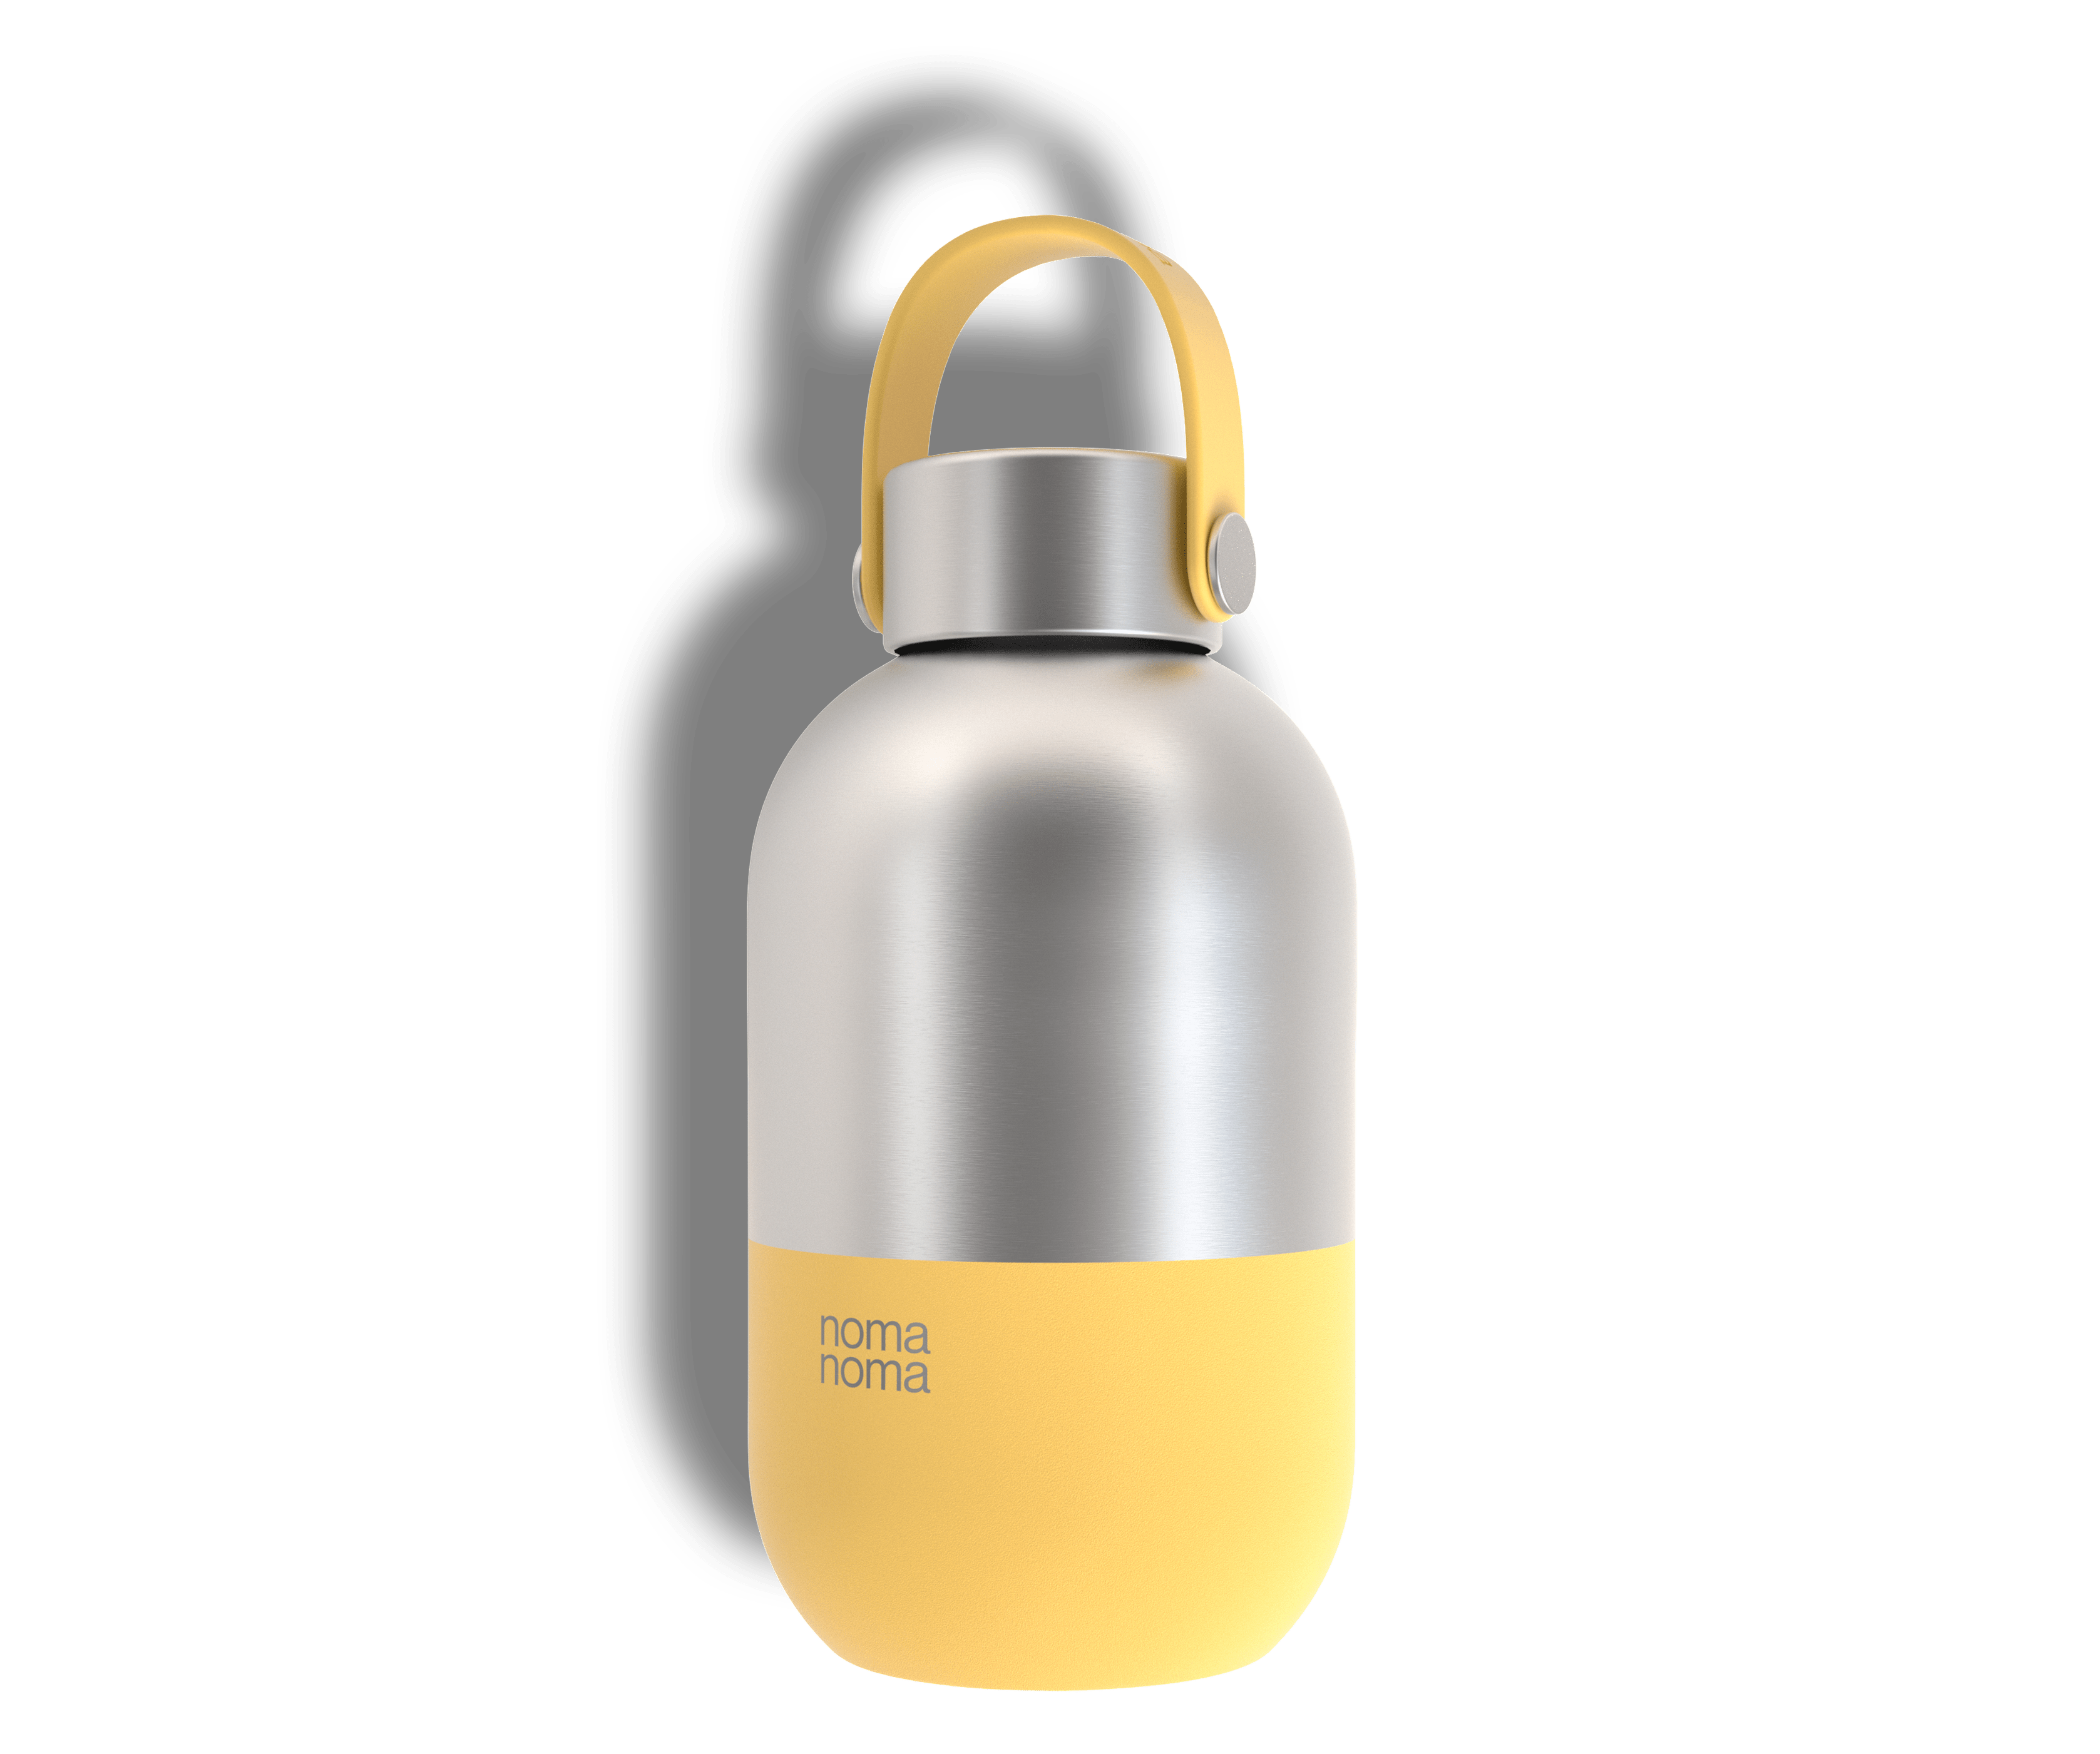 Die noma noma 0,5 l Wasserflasche in gelb